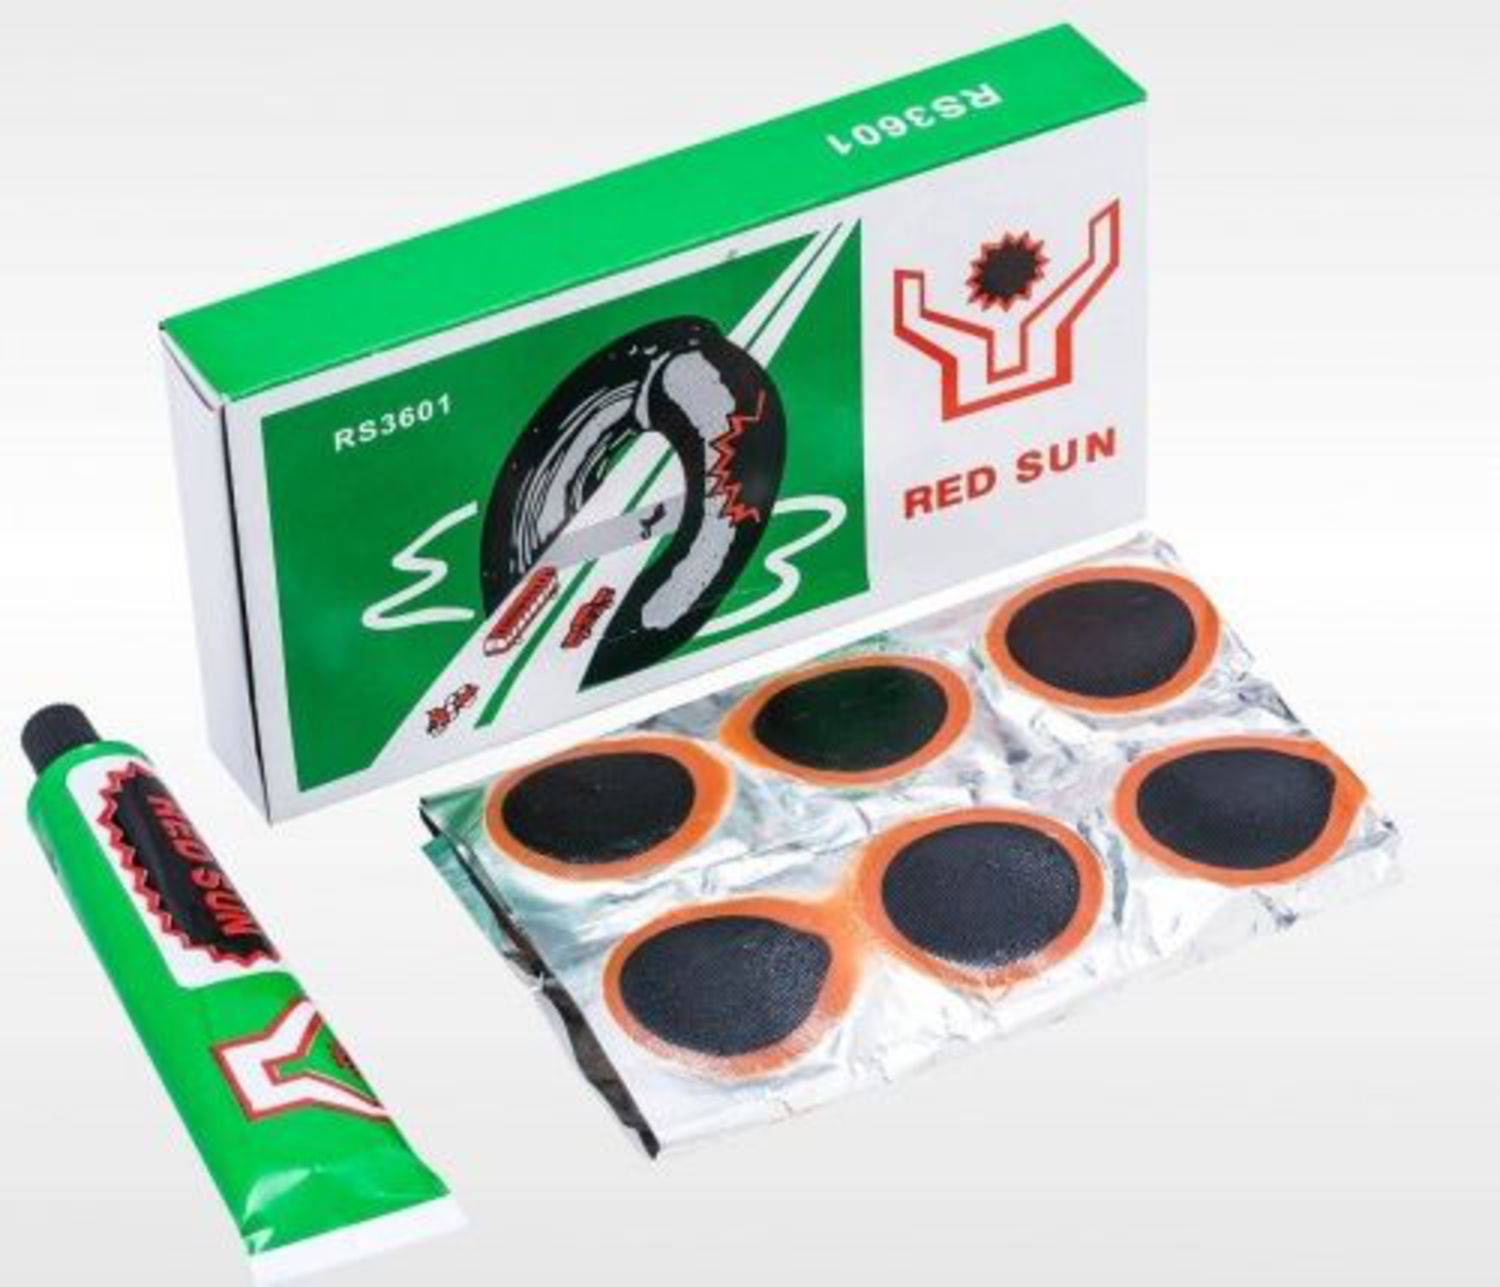 Заплатка для камер купить. Велоаптечка Red Sun rs3601. Red Sun латки rs3601 тюбик. Набор для ремонта камеры 36 заплаток rs3601. Латки для камер велосипеда Red Sun rs3601.